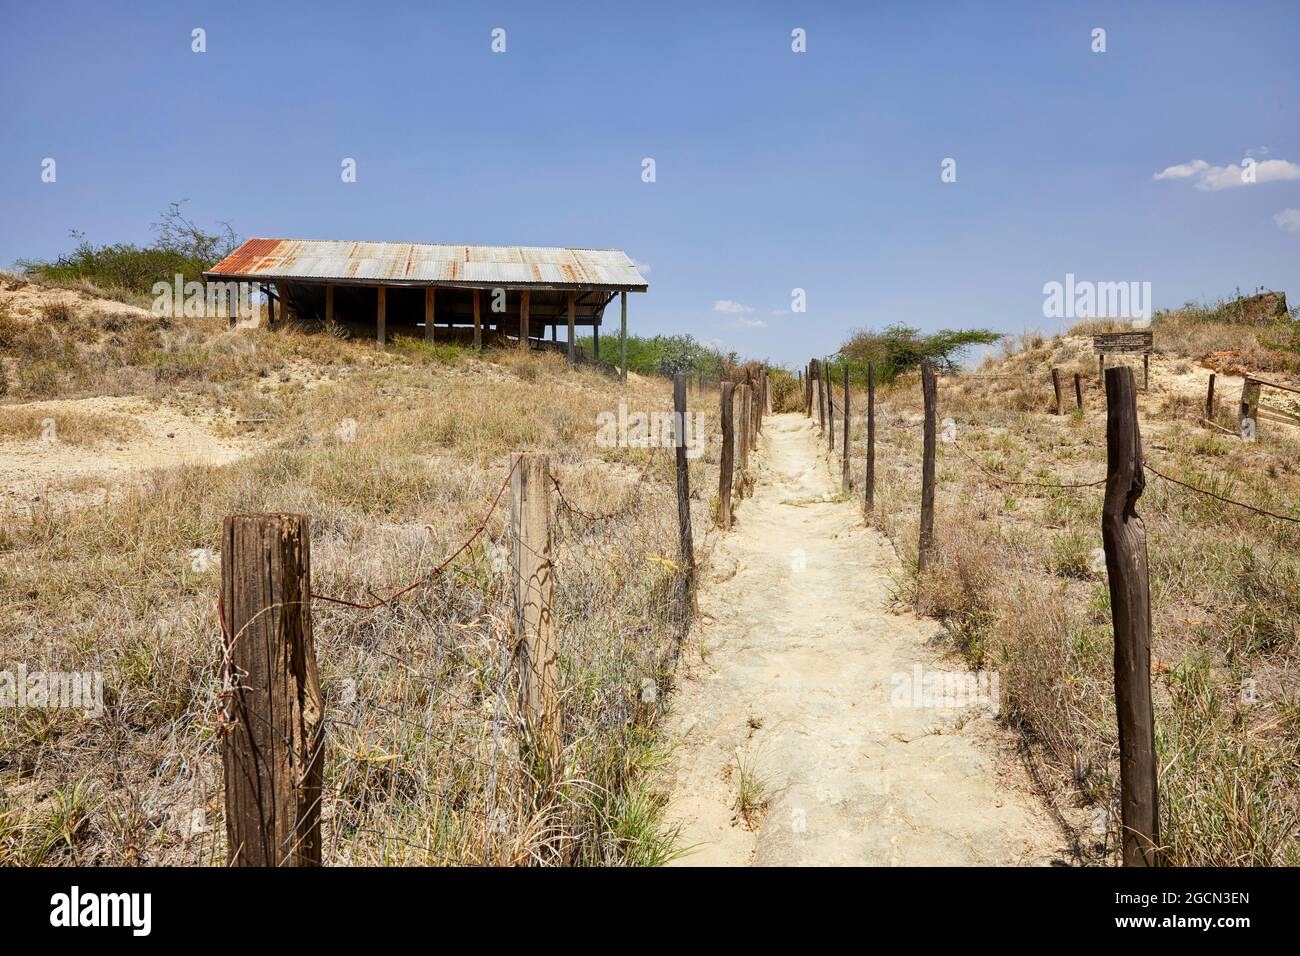 Olorgesailie Prähistorische Stätte in Kenia Afrika Stockfoto